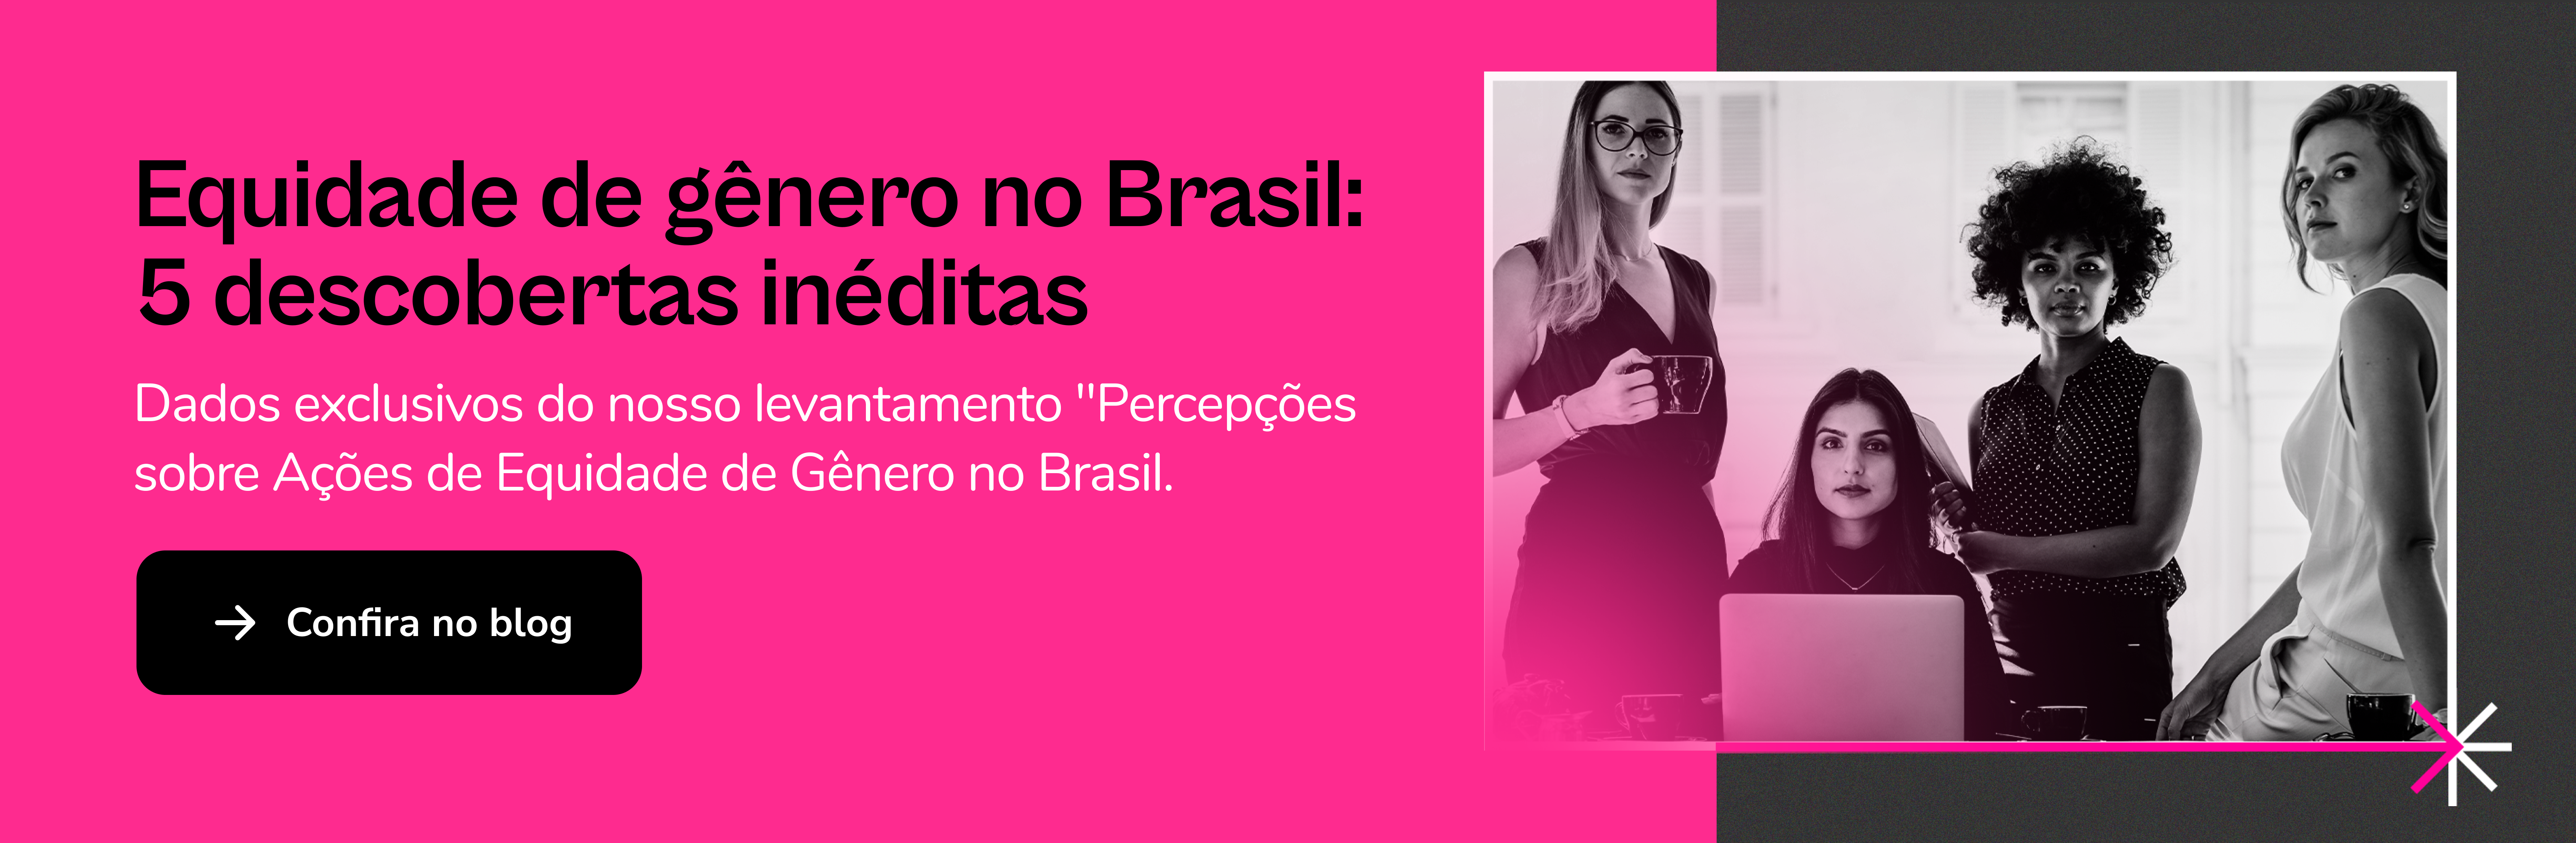 Banner 15 - Equidade de gênero no Brasil